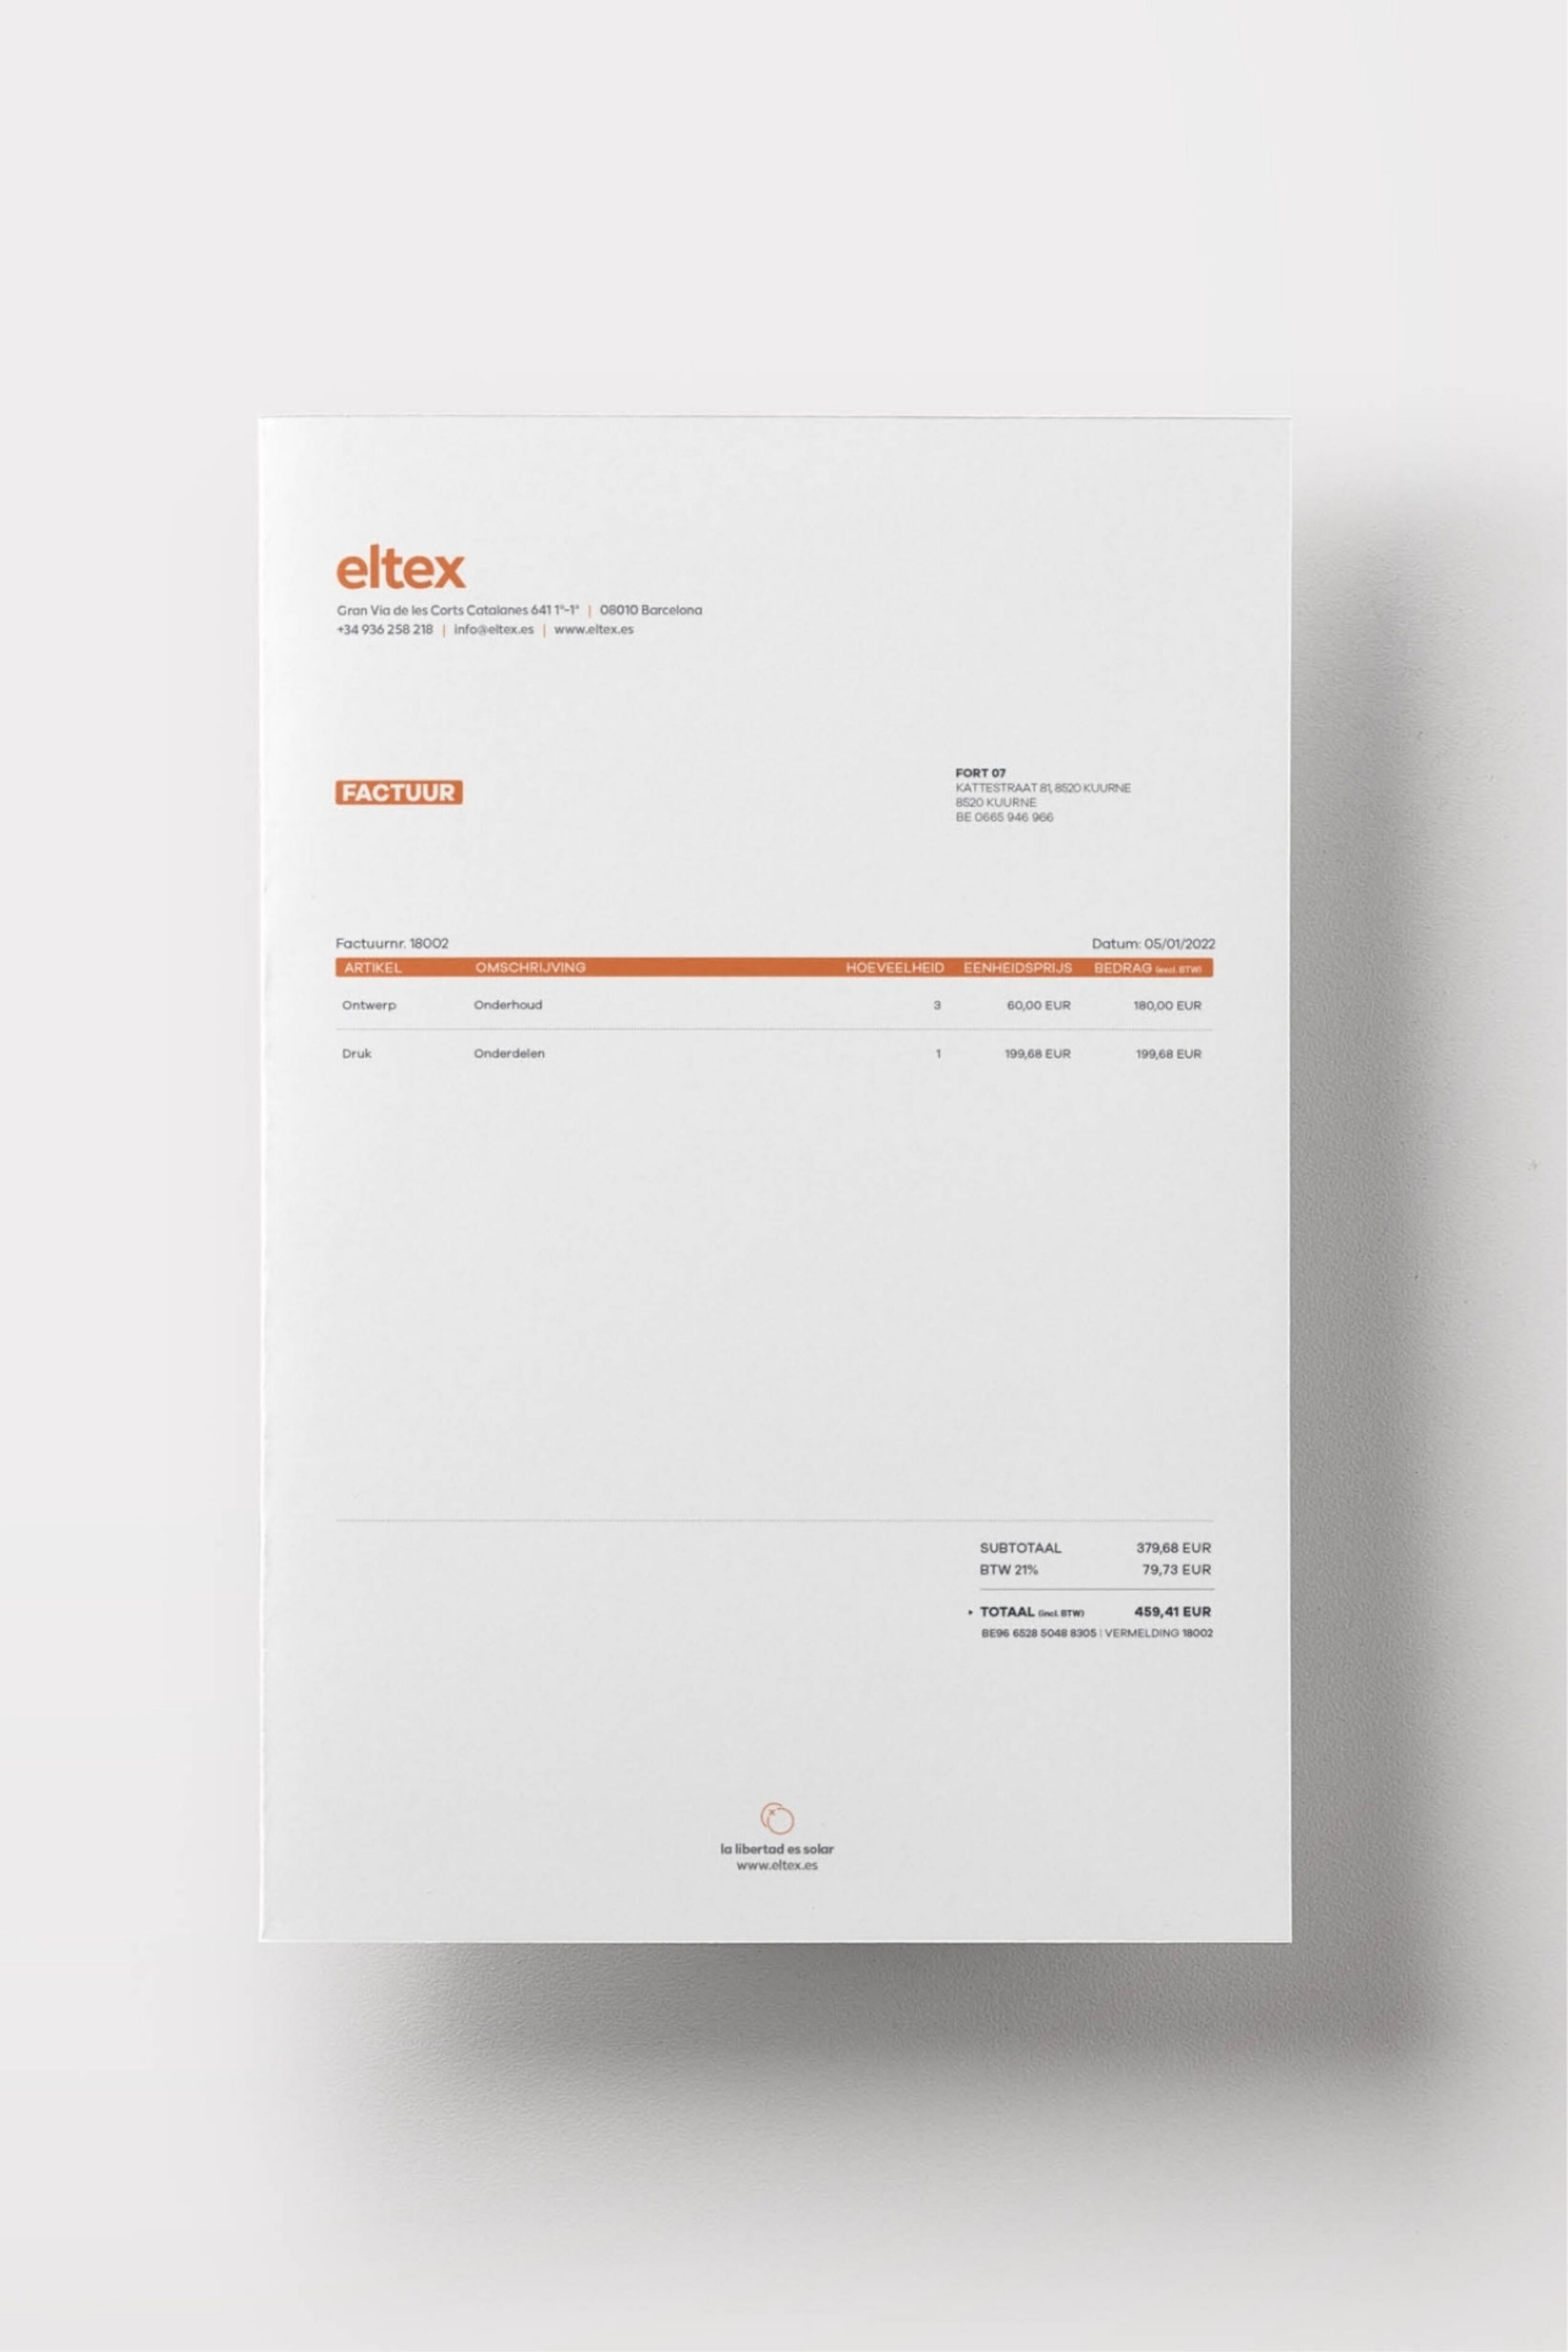 ELTEX Concept WEB 01 09 1804x0